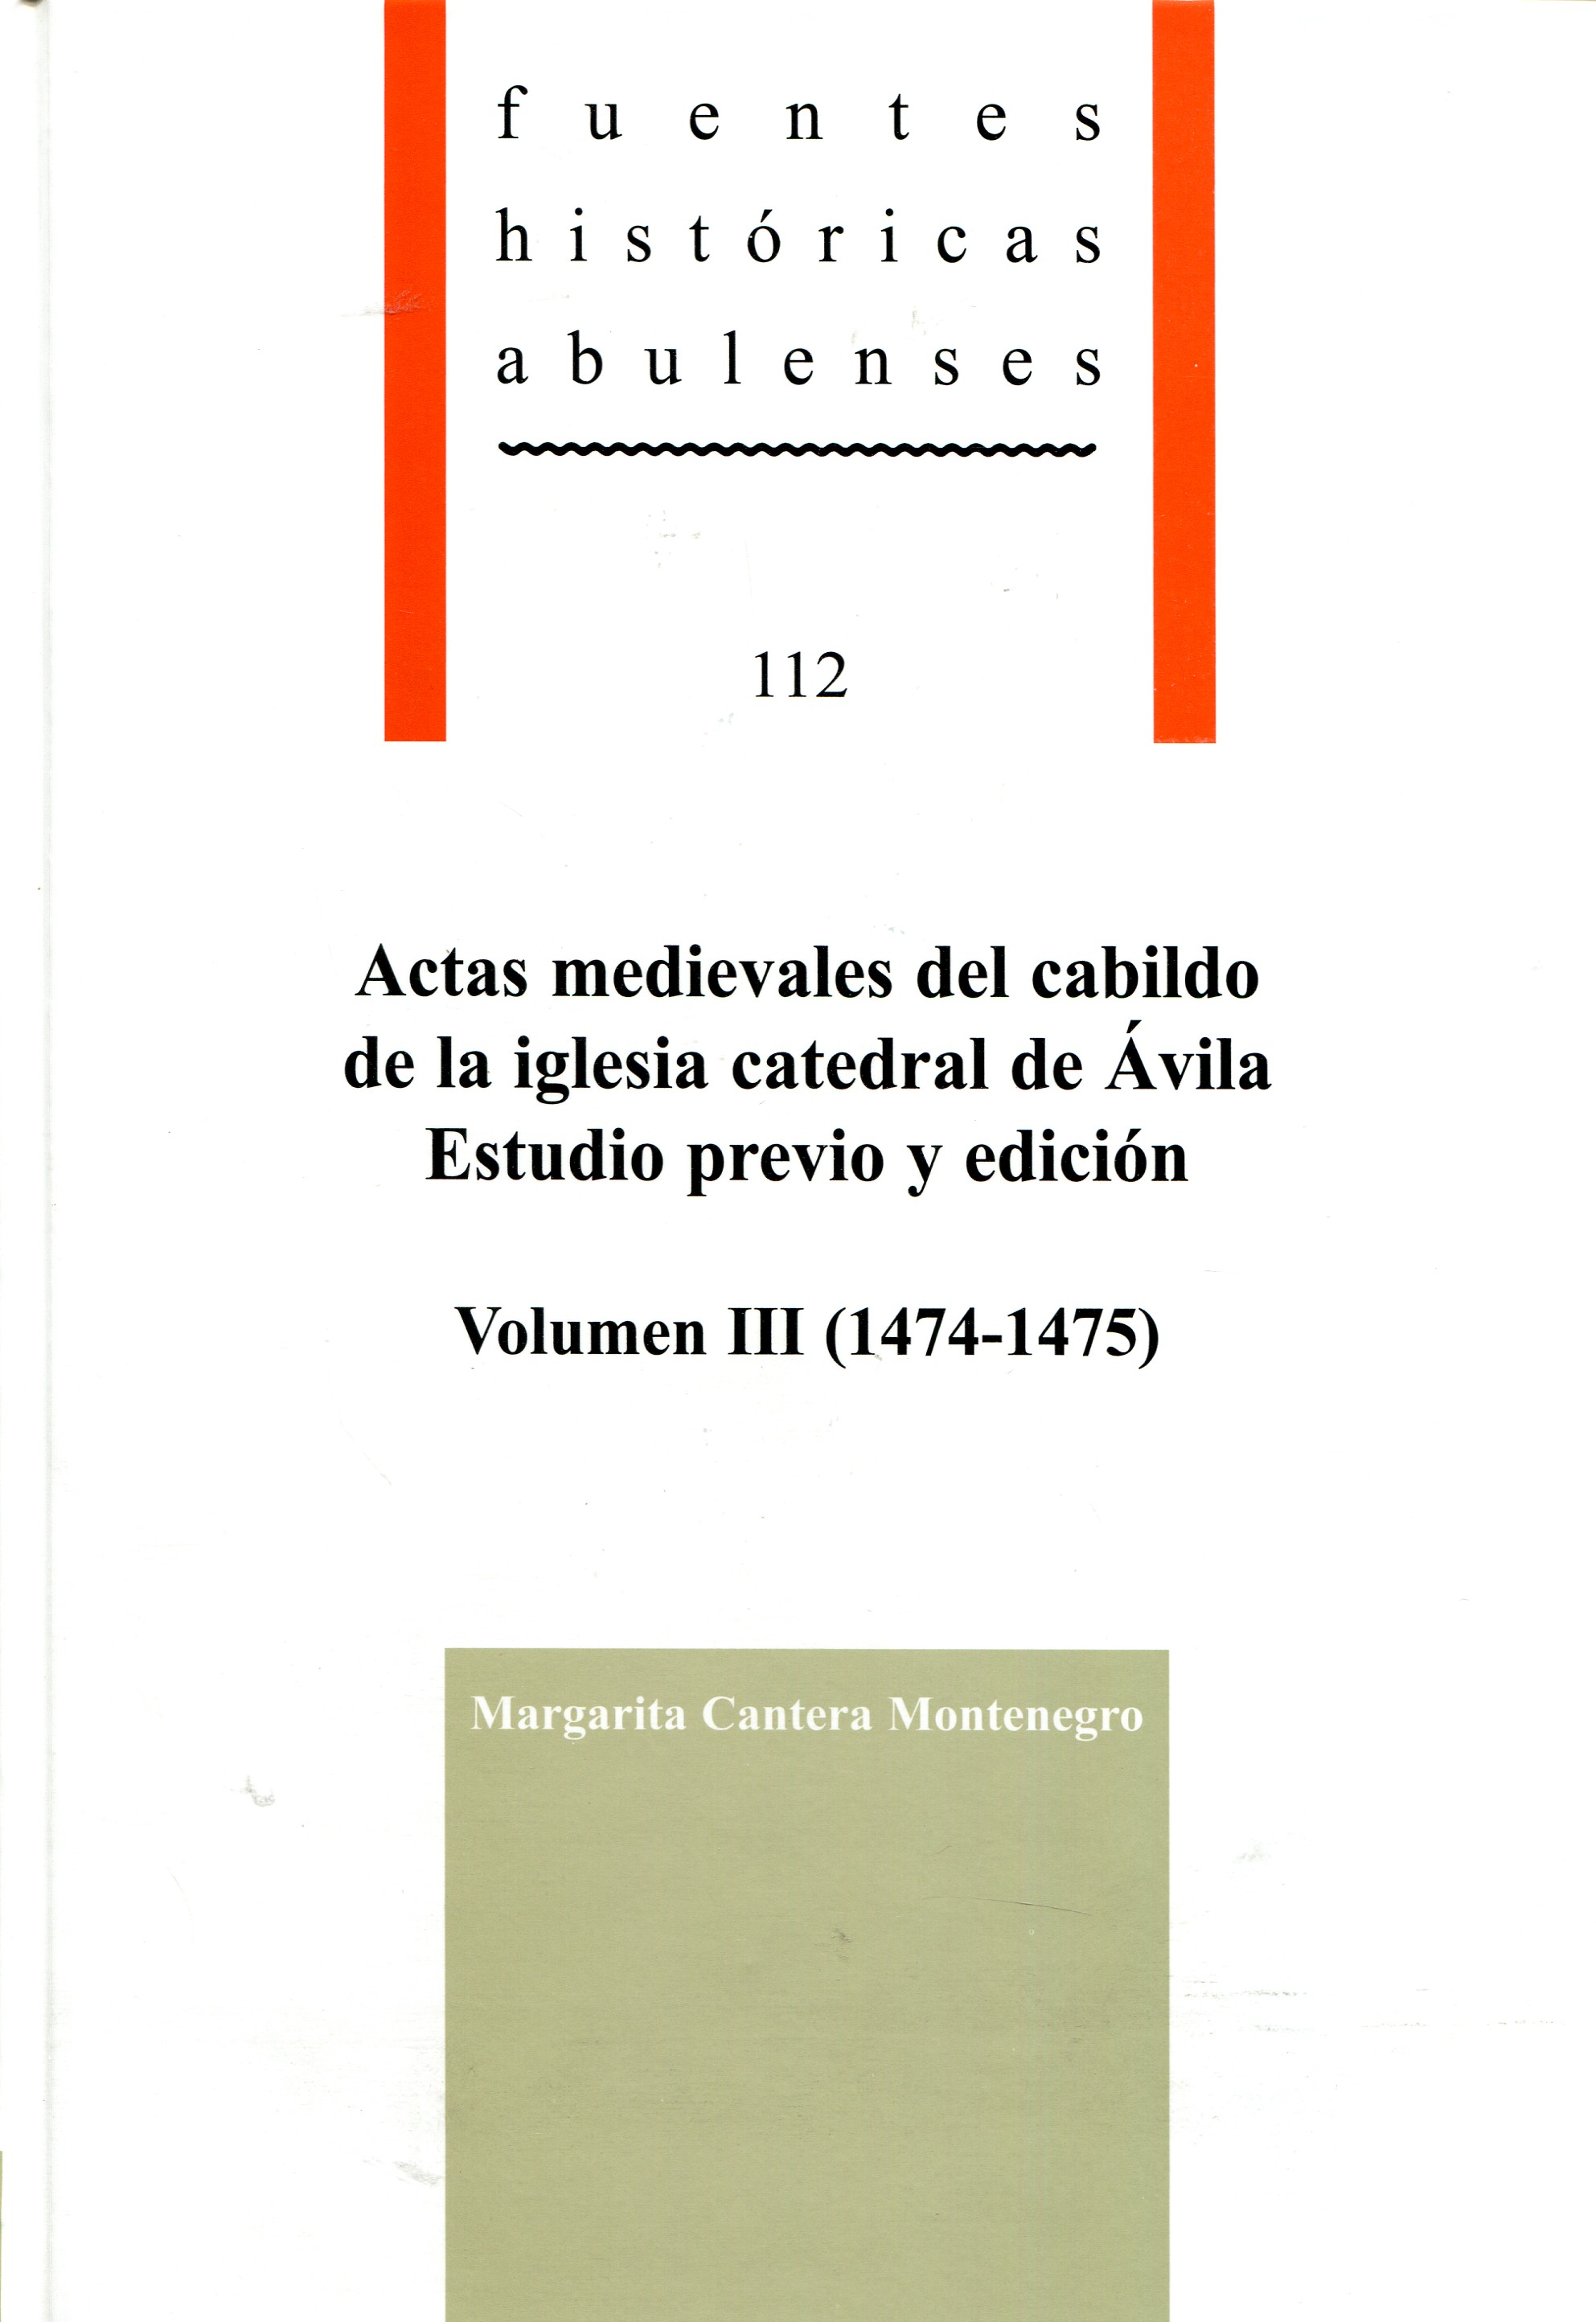 Actas medievales del Cabildo de la iglesia catedral de Ávila: estudio previo y edición